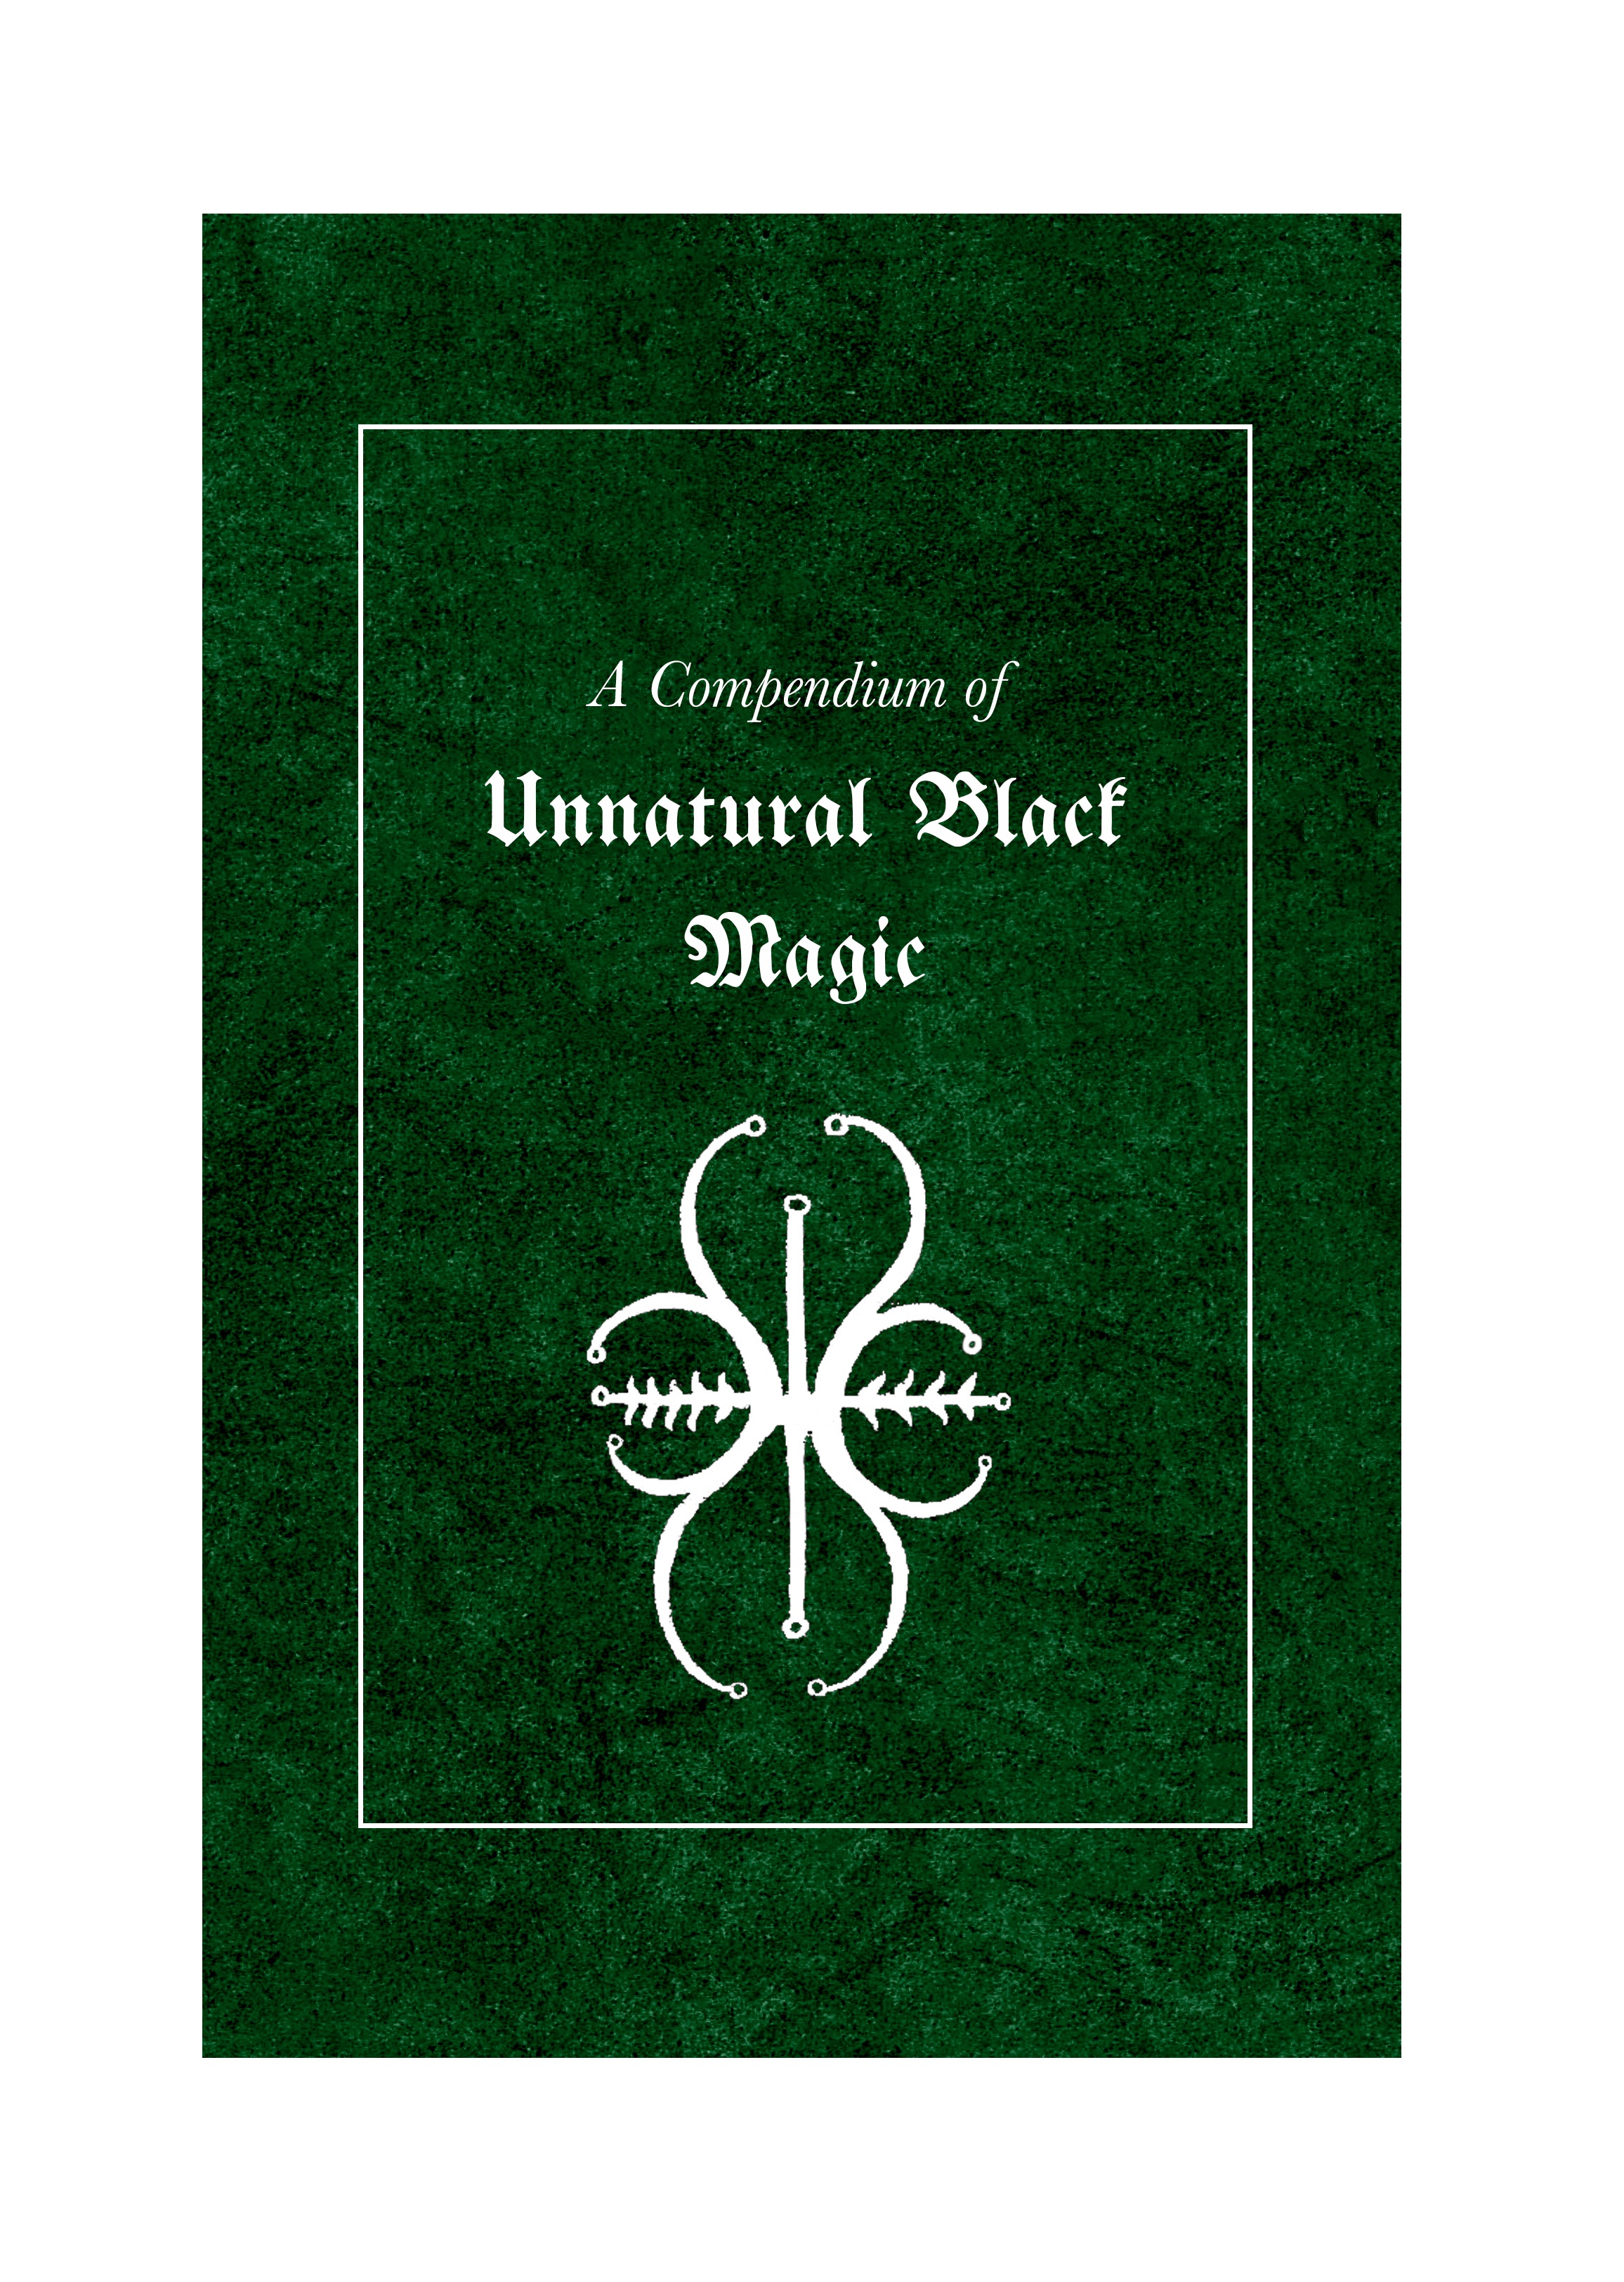 A Compendium of Unnatural Black Magic